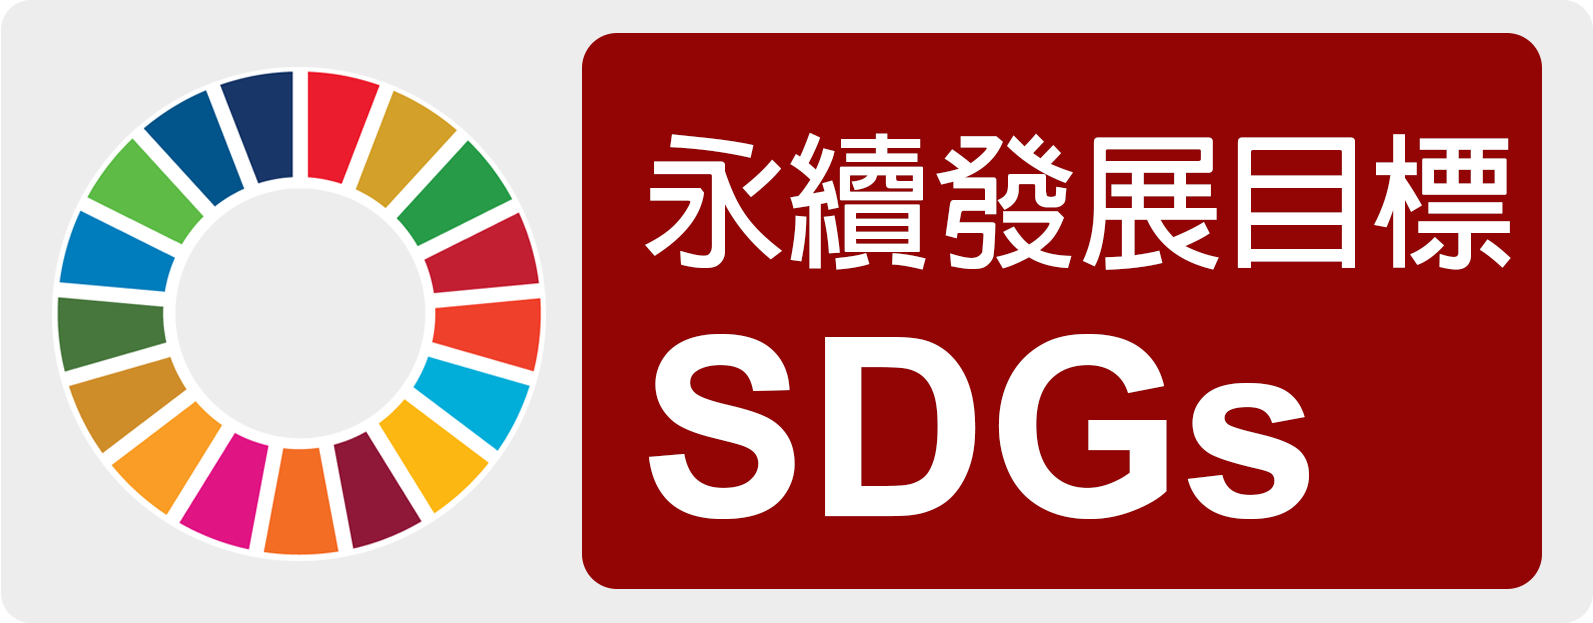 SDGs永續指標圖示